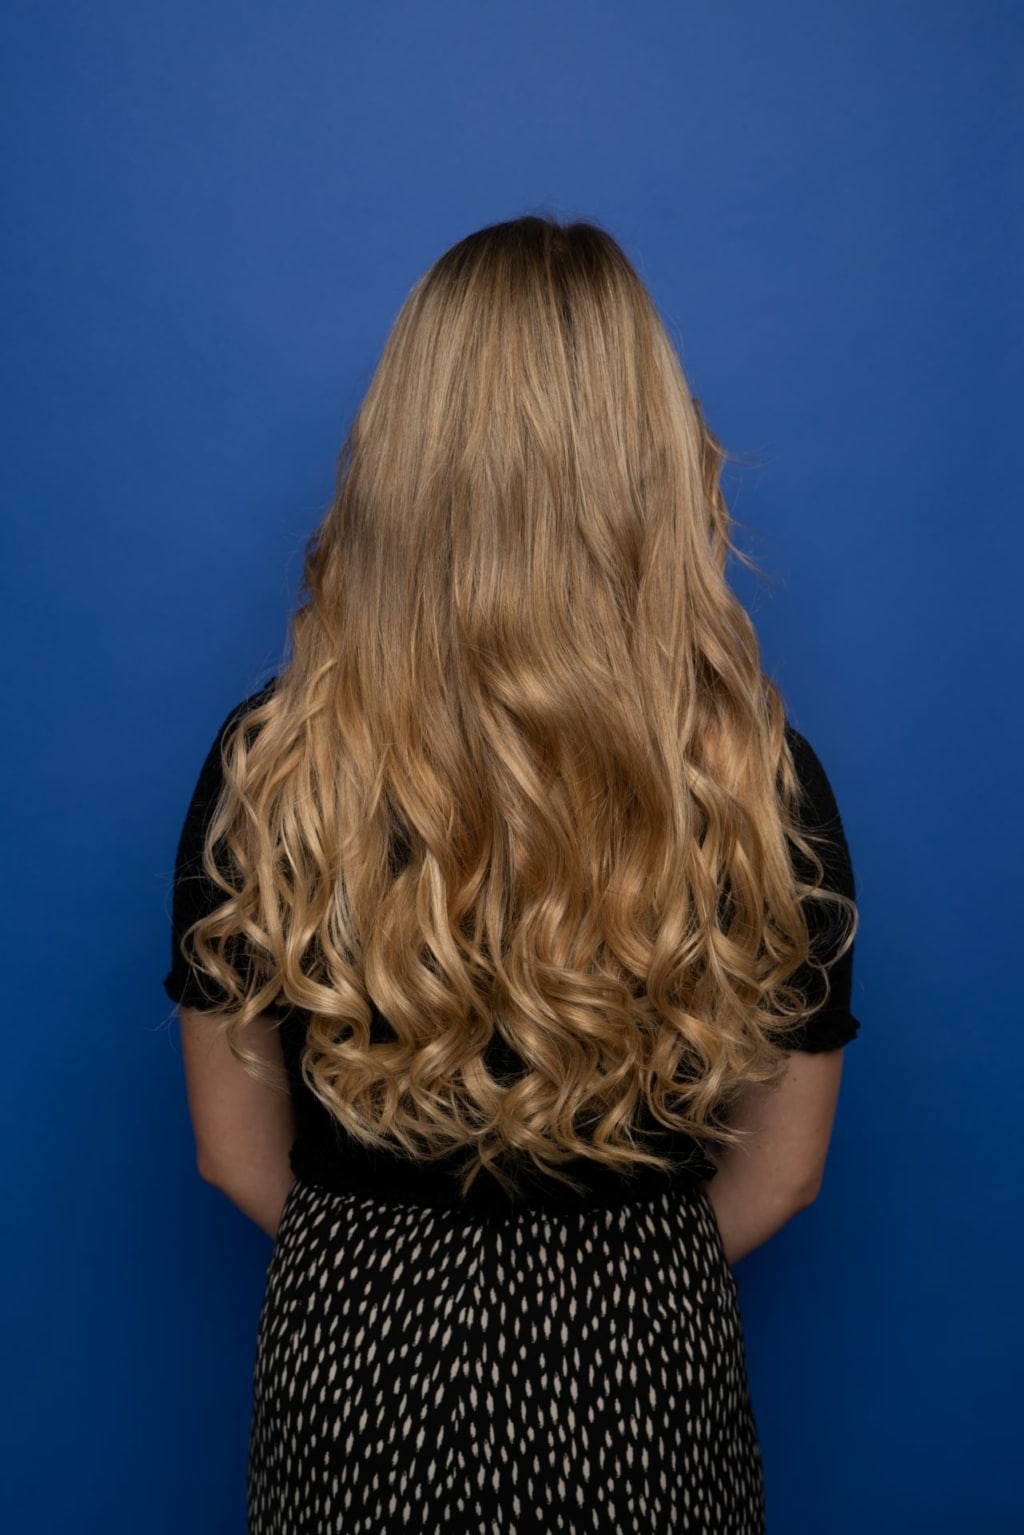 La ganadora de la extensión de cabello Hairdreams muestra su melena rubia.